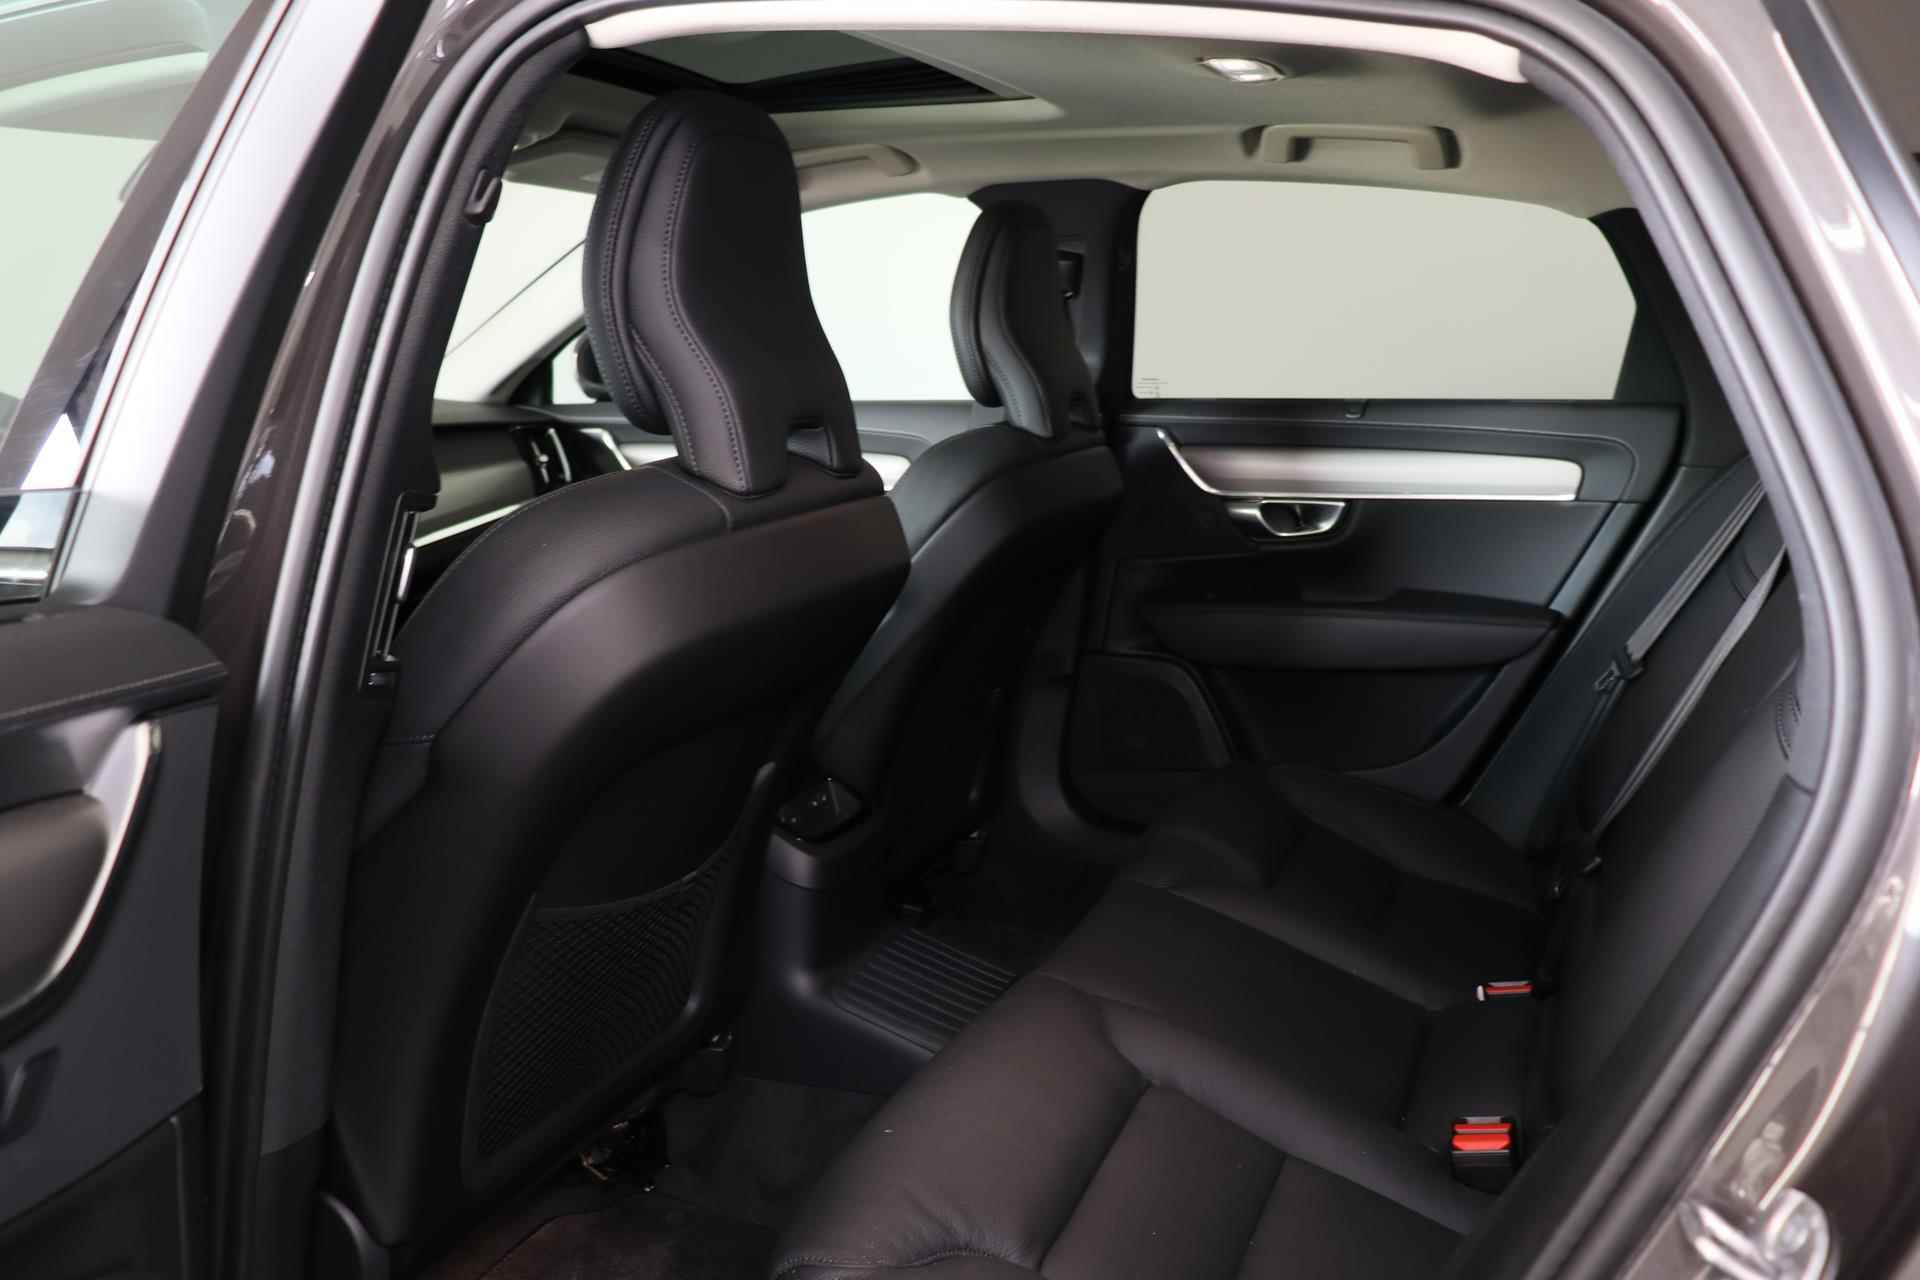 Volvo S90 T8 AWD Plus Bright - LONG RANGE - Panorama/schuifdak - IntelliSafe Assist & Surround - 360° Camera - Adaptieve LED koplampen - Verwarmde voorstoelen, stuur & achterbank - Parkeersensoren voor & achter - Elektr. bedienb. voorstoelen met geheugen - Extra getint glas - Elektr. inklapbare trekhaak - 19' LMV - 22/27